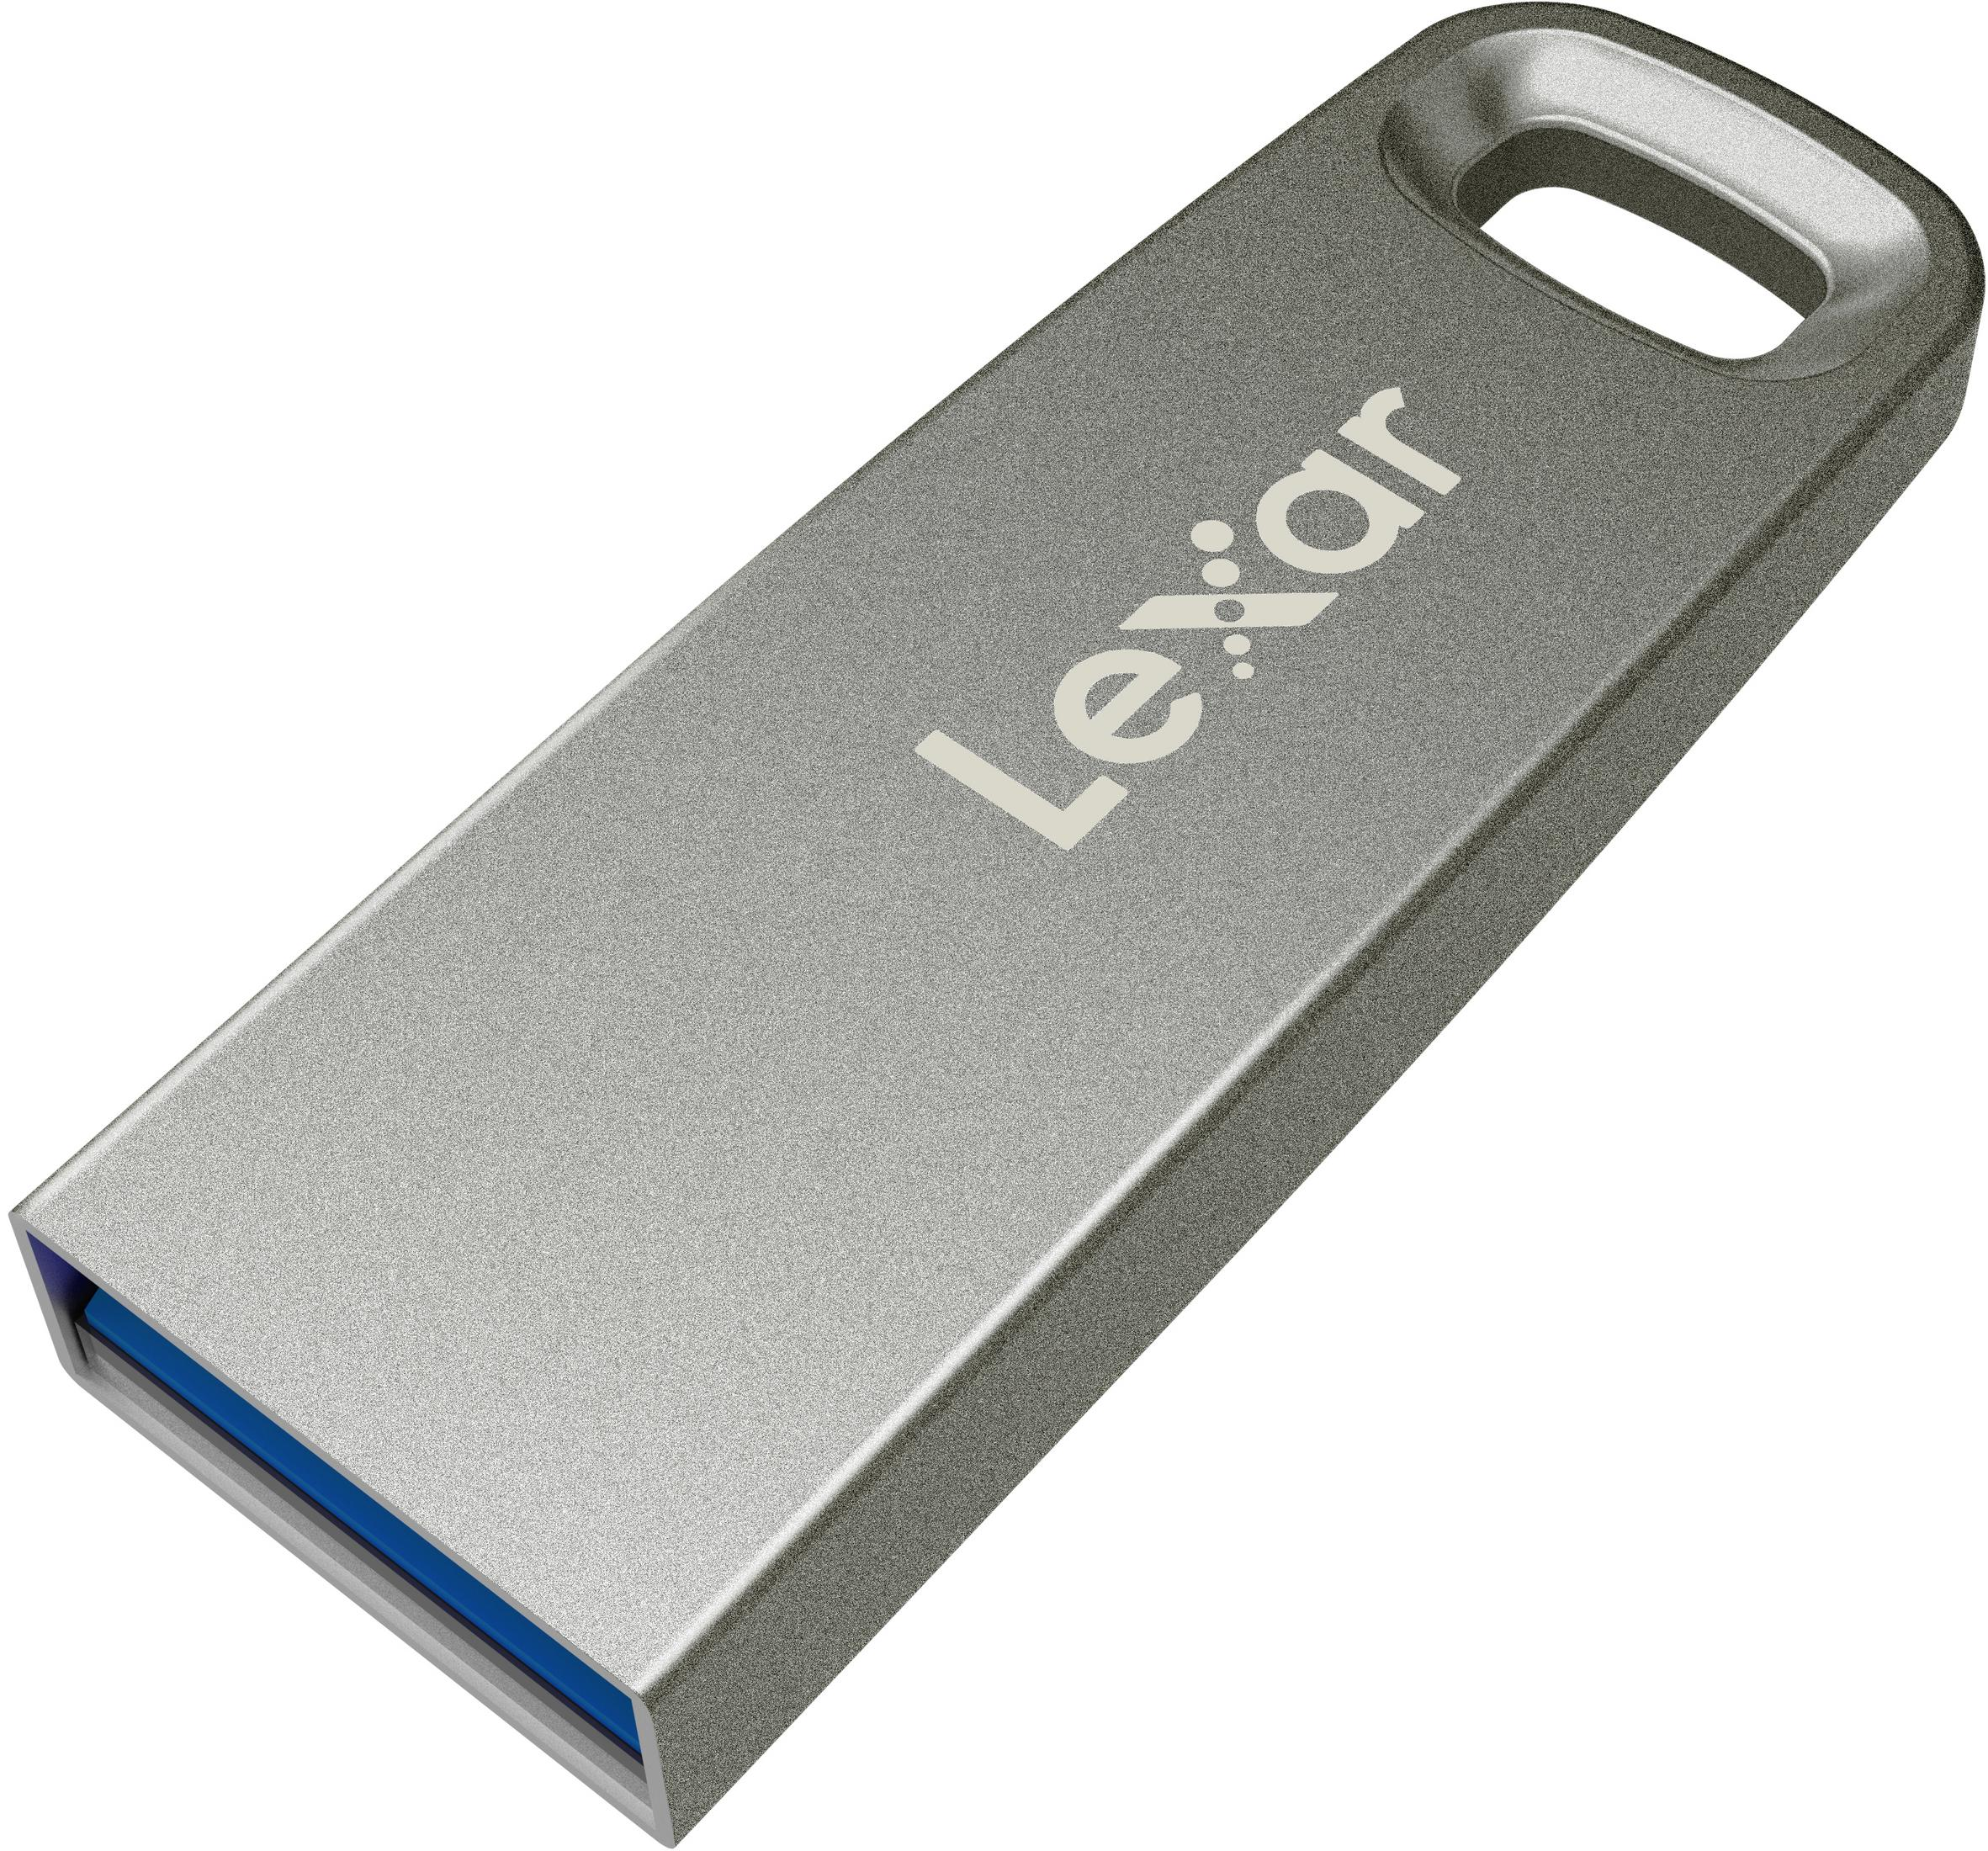 LEXAR LJDM45-256ABSL JUMPDRIV M45 256GB (Silber, GB) 256 SILVER250 USB-Stick USB3.1